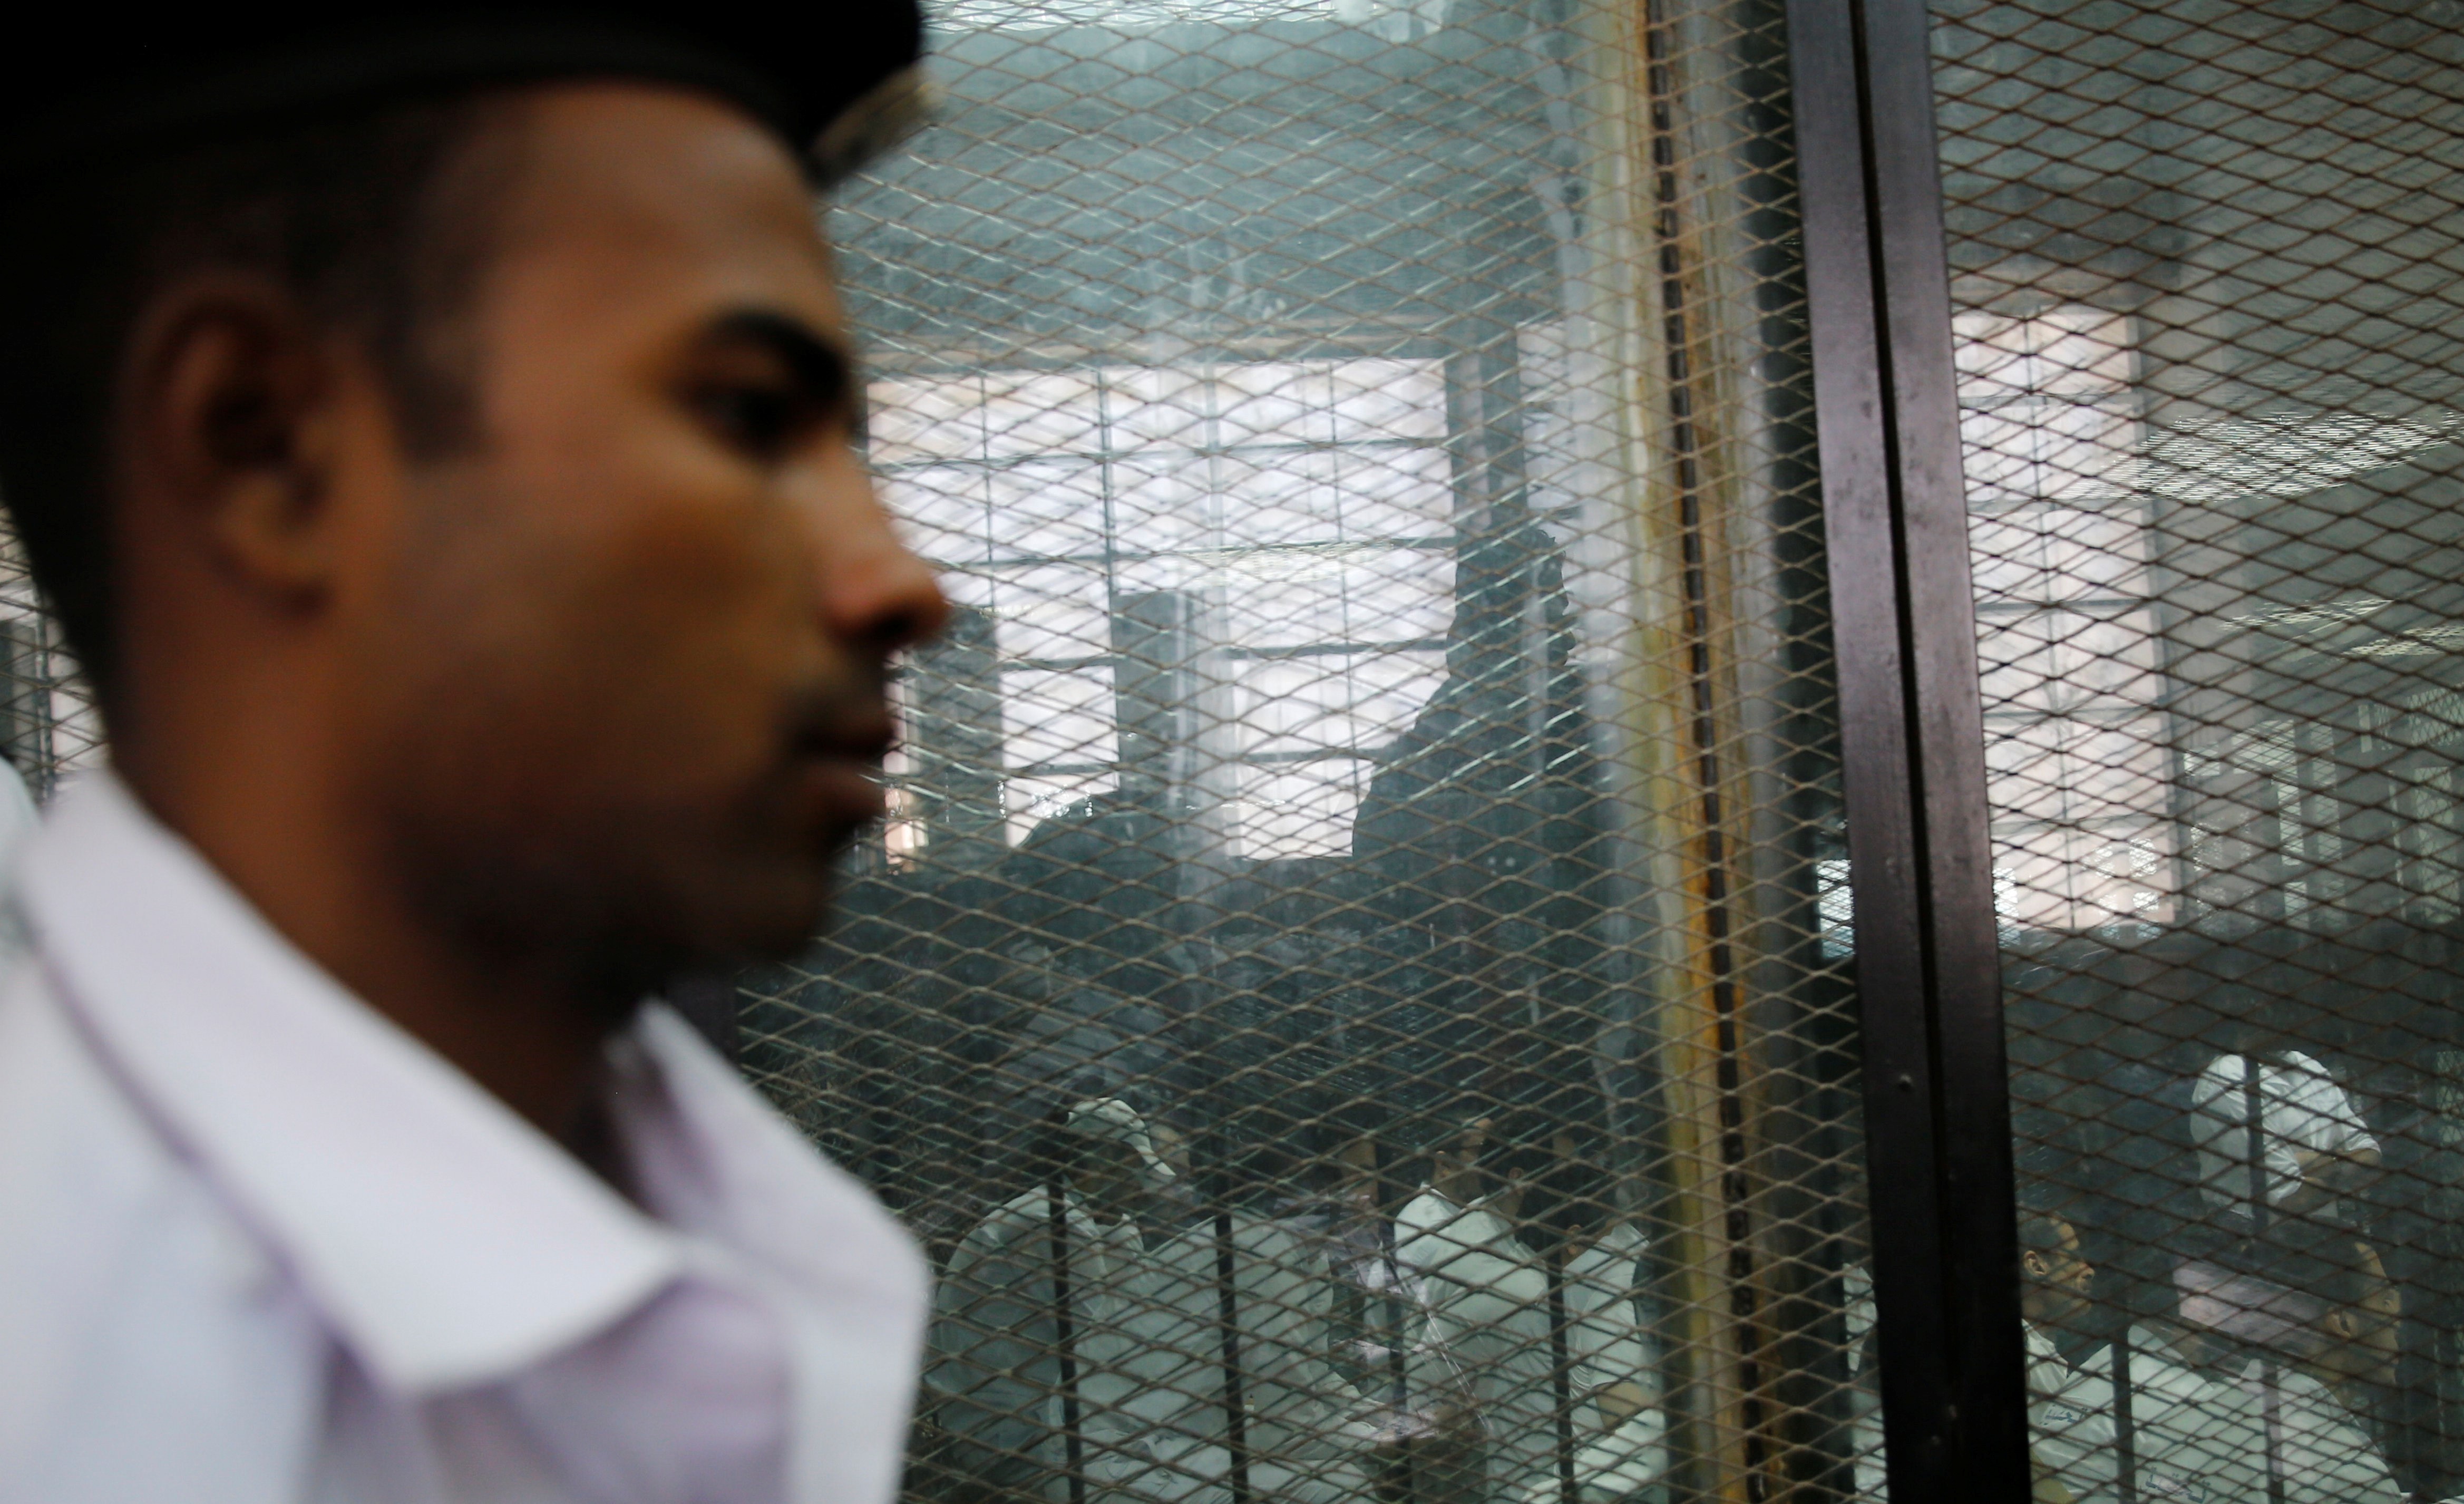 Un officier de police monte la garde devant des personnes accusées d’avoir participé en 2015 à l’assassinat du procureur général égyptien, le 17 juin 2015 (Reuters)